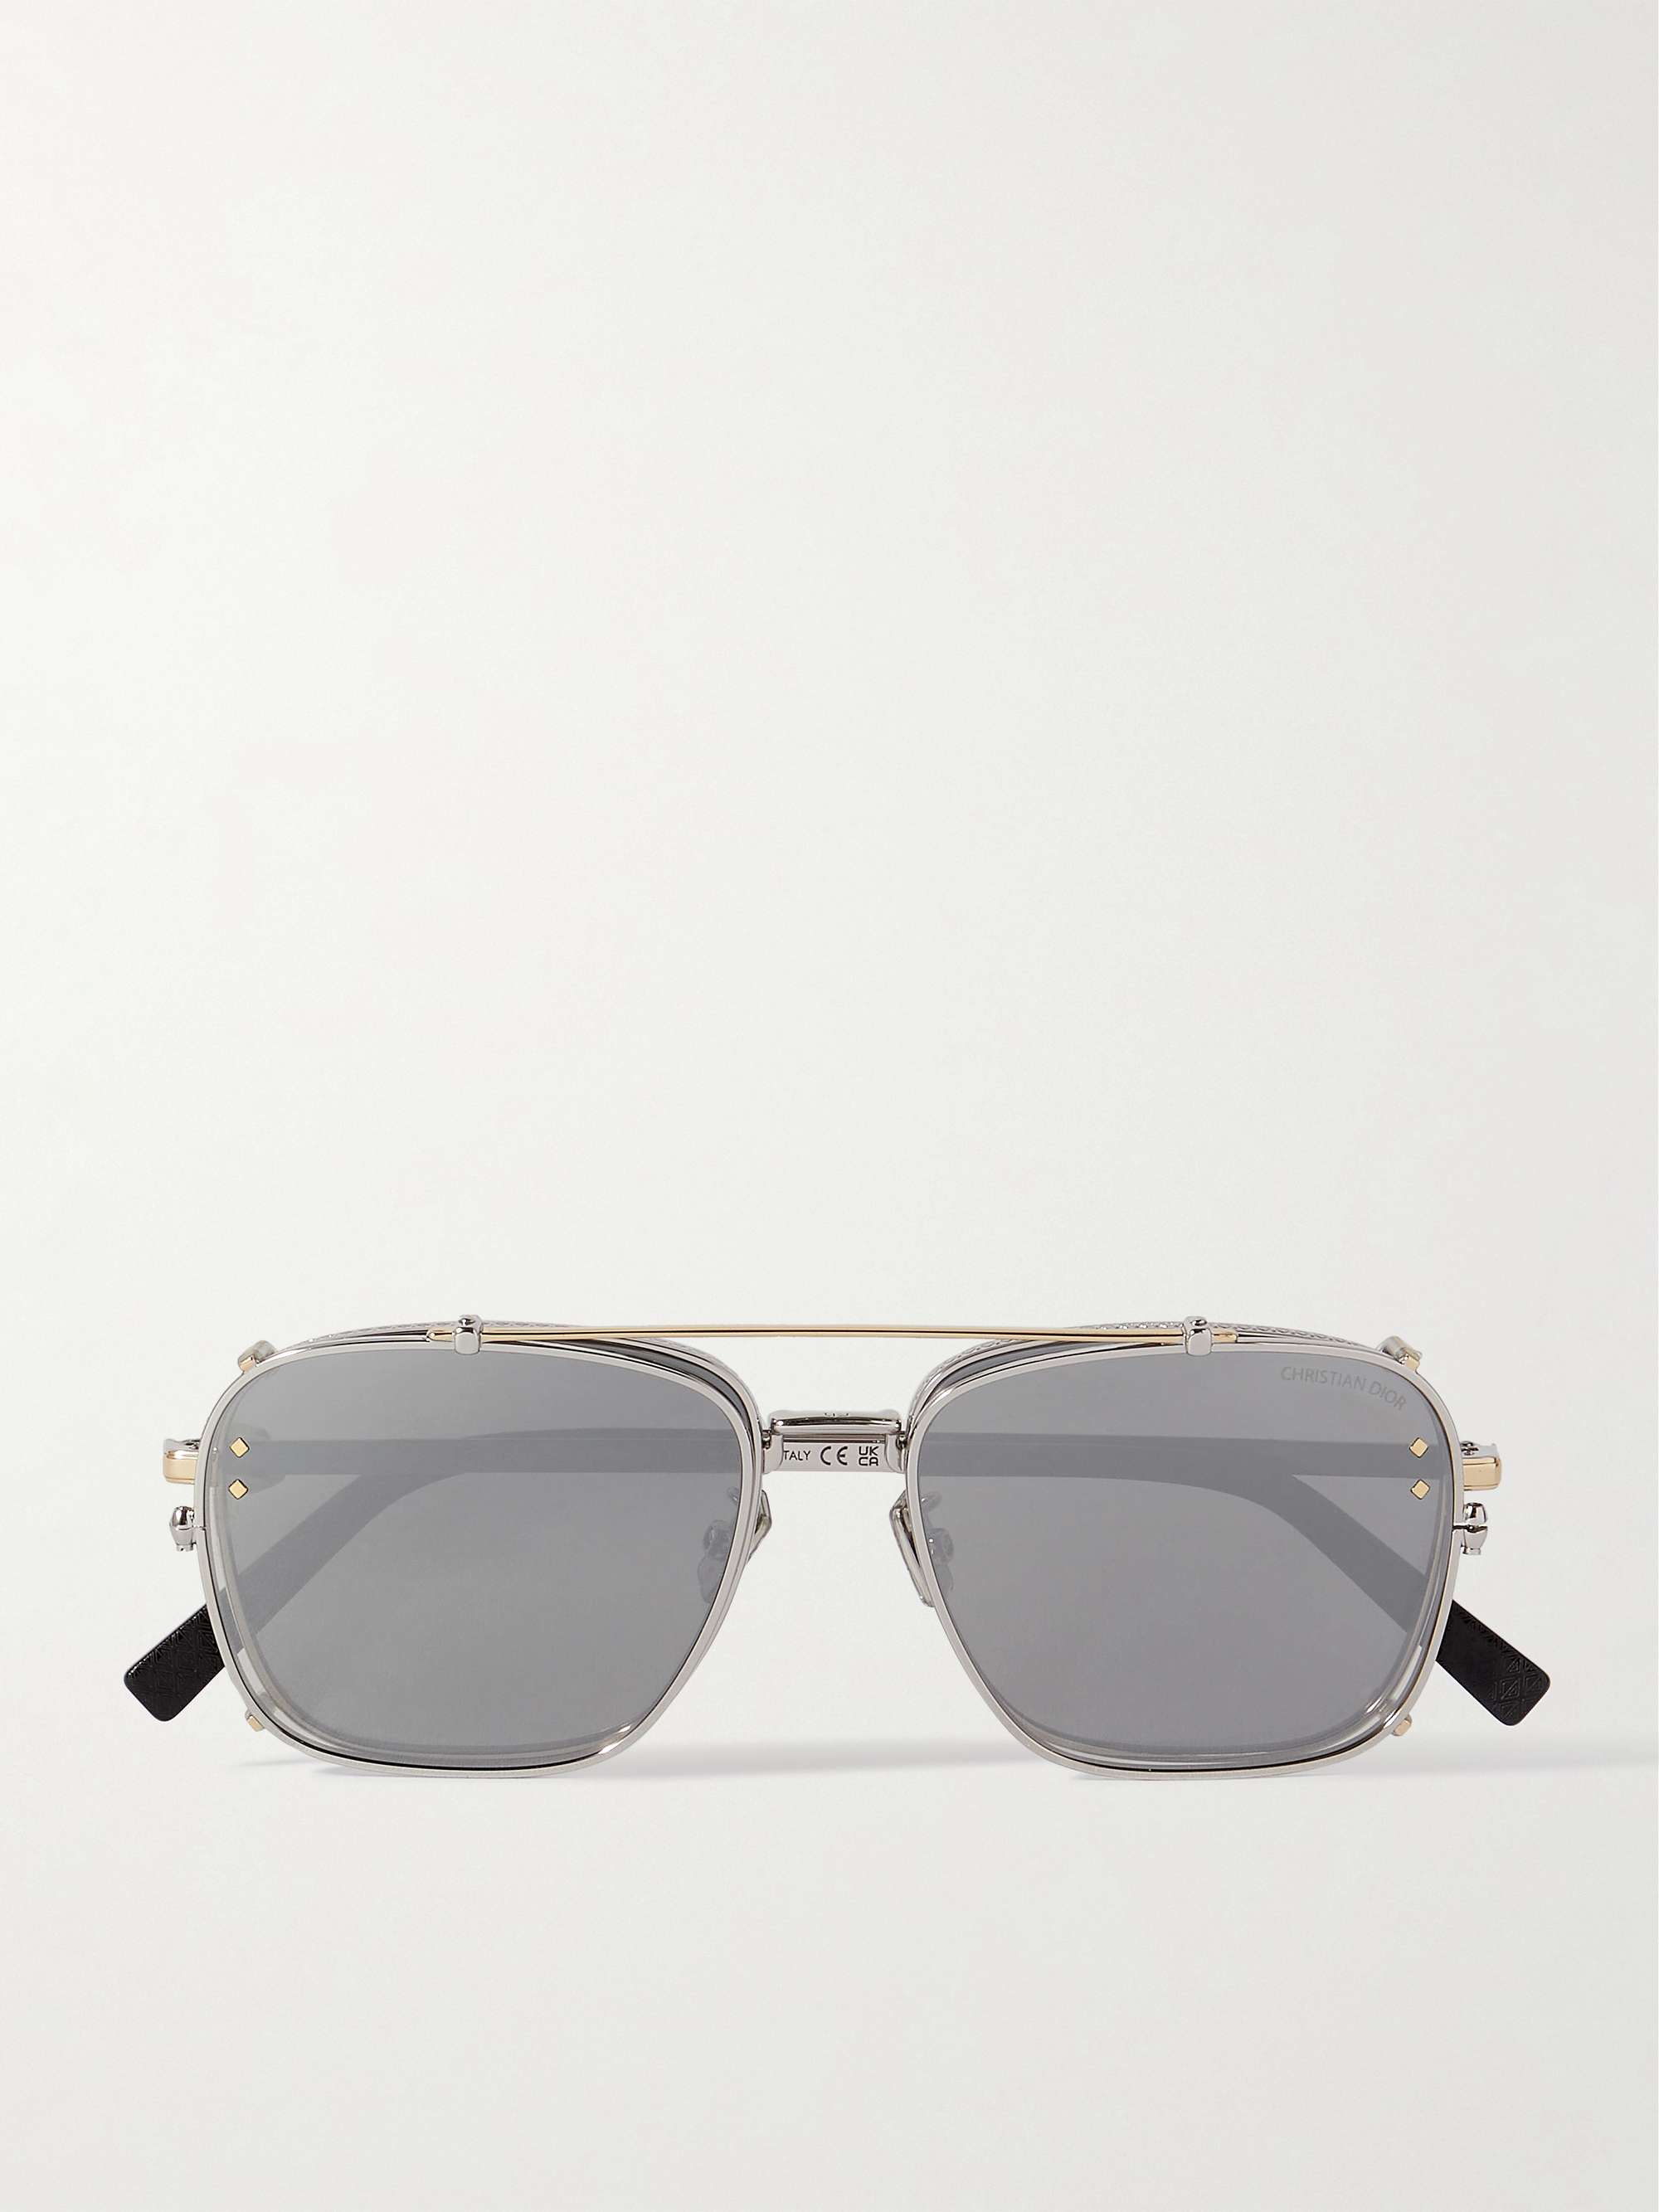 Dior Men's CD Pilot Sunglasses